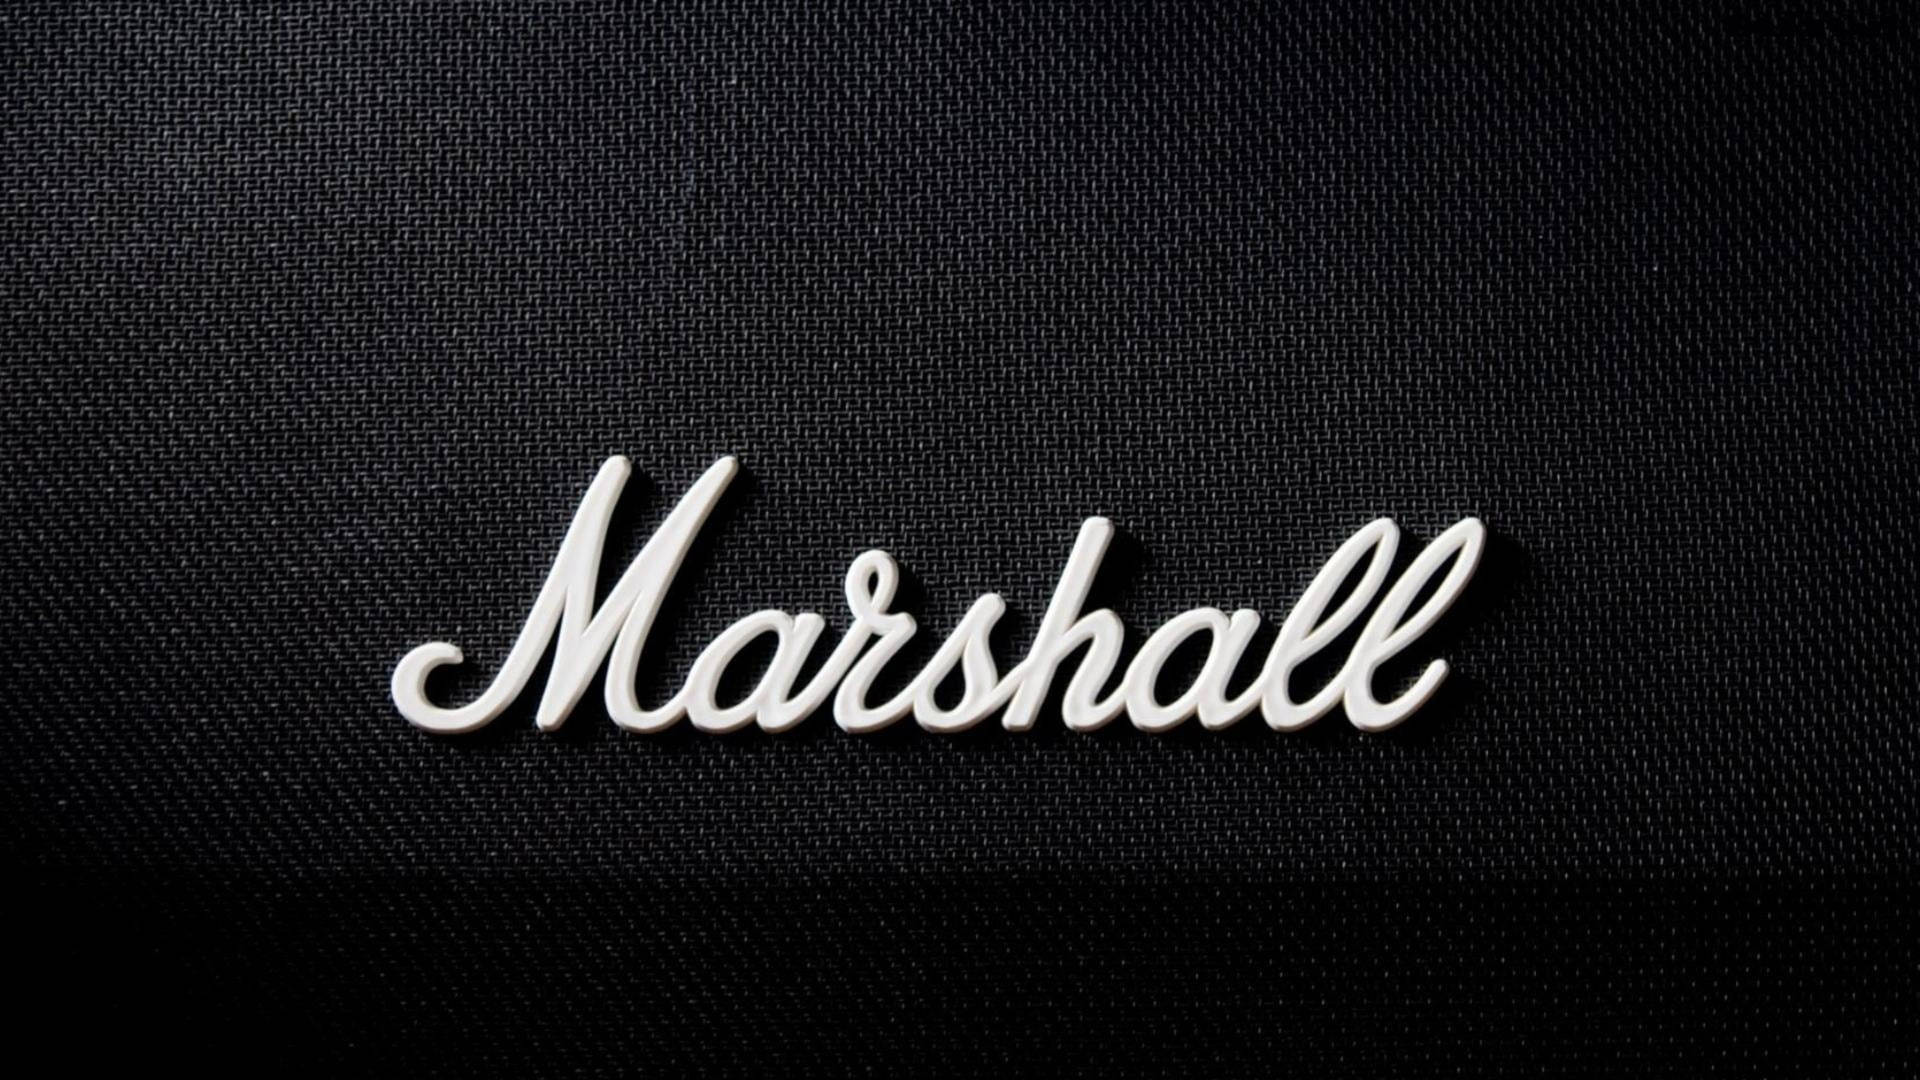 Marshall Wallpapers